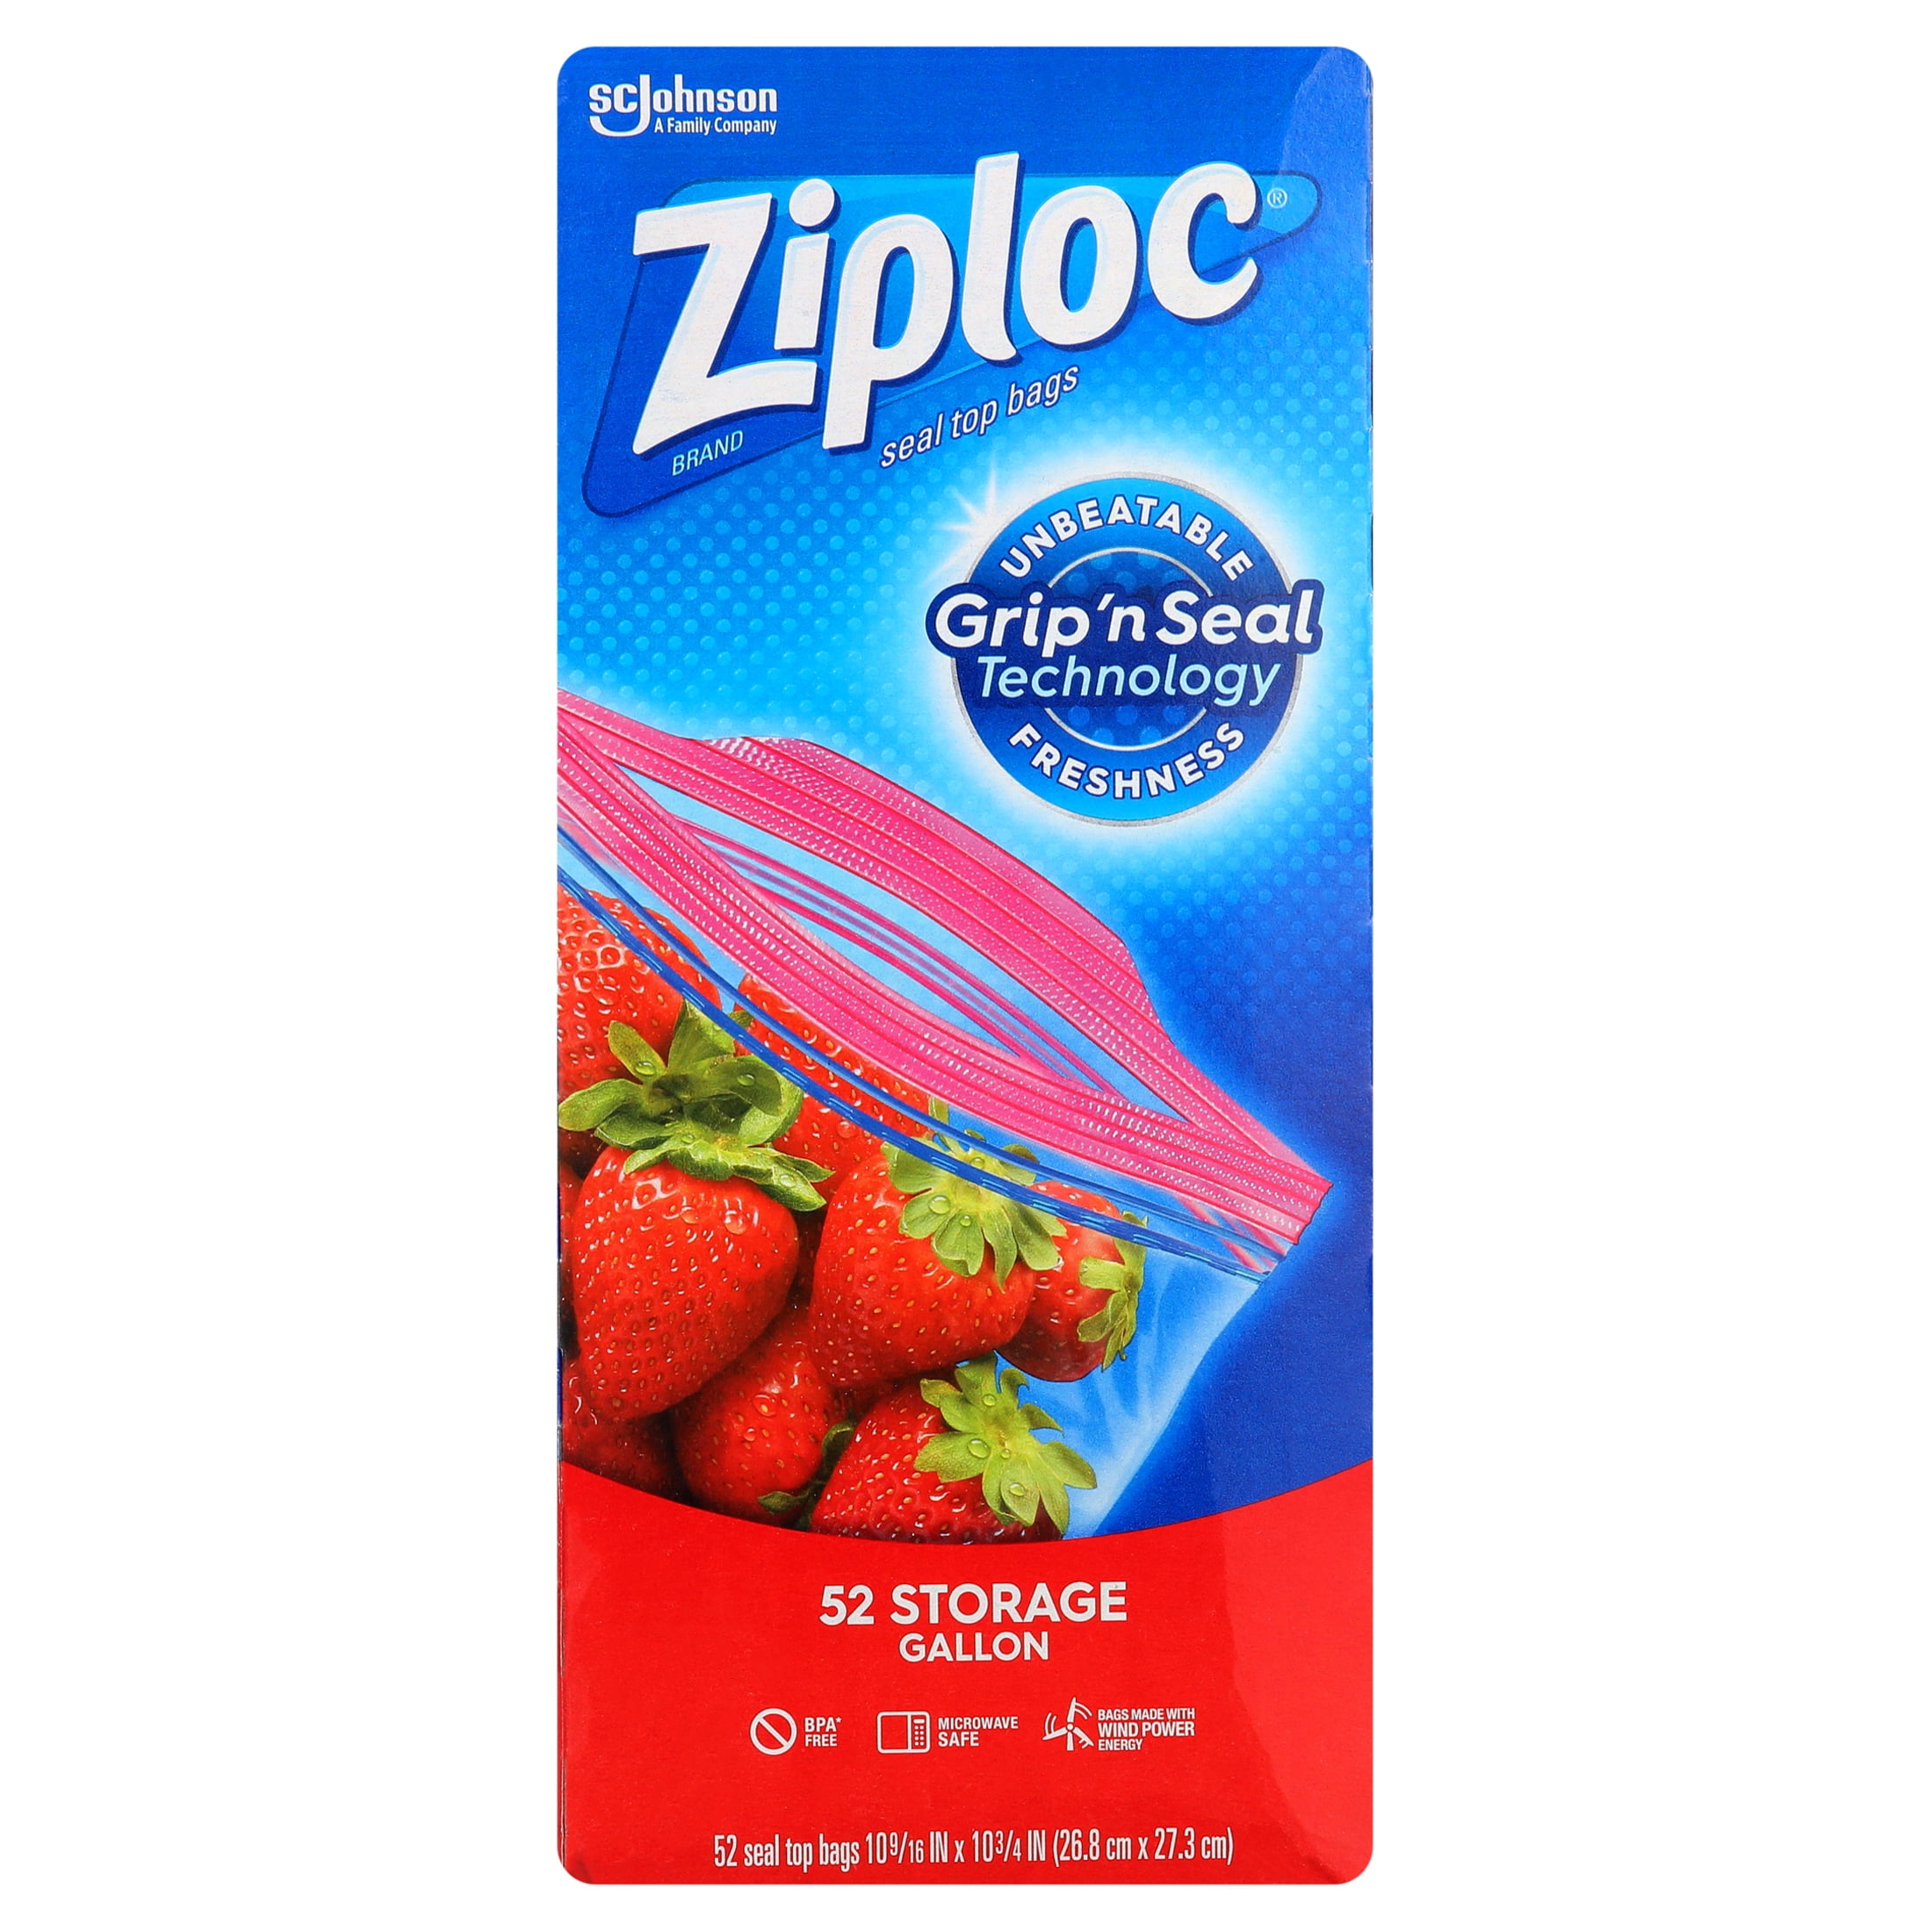 Ziploc Freezer Food Bags Variety Pack 347 Bags Zip Seal